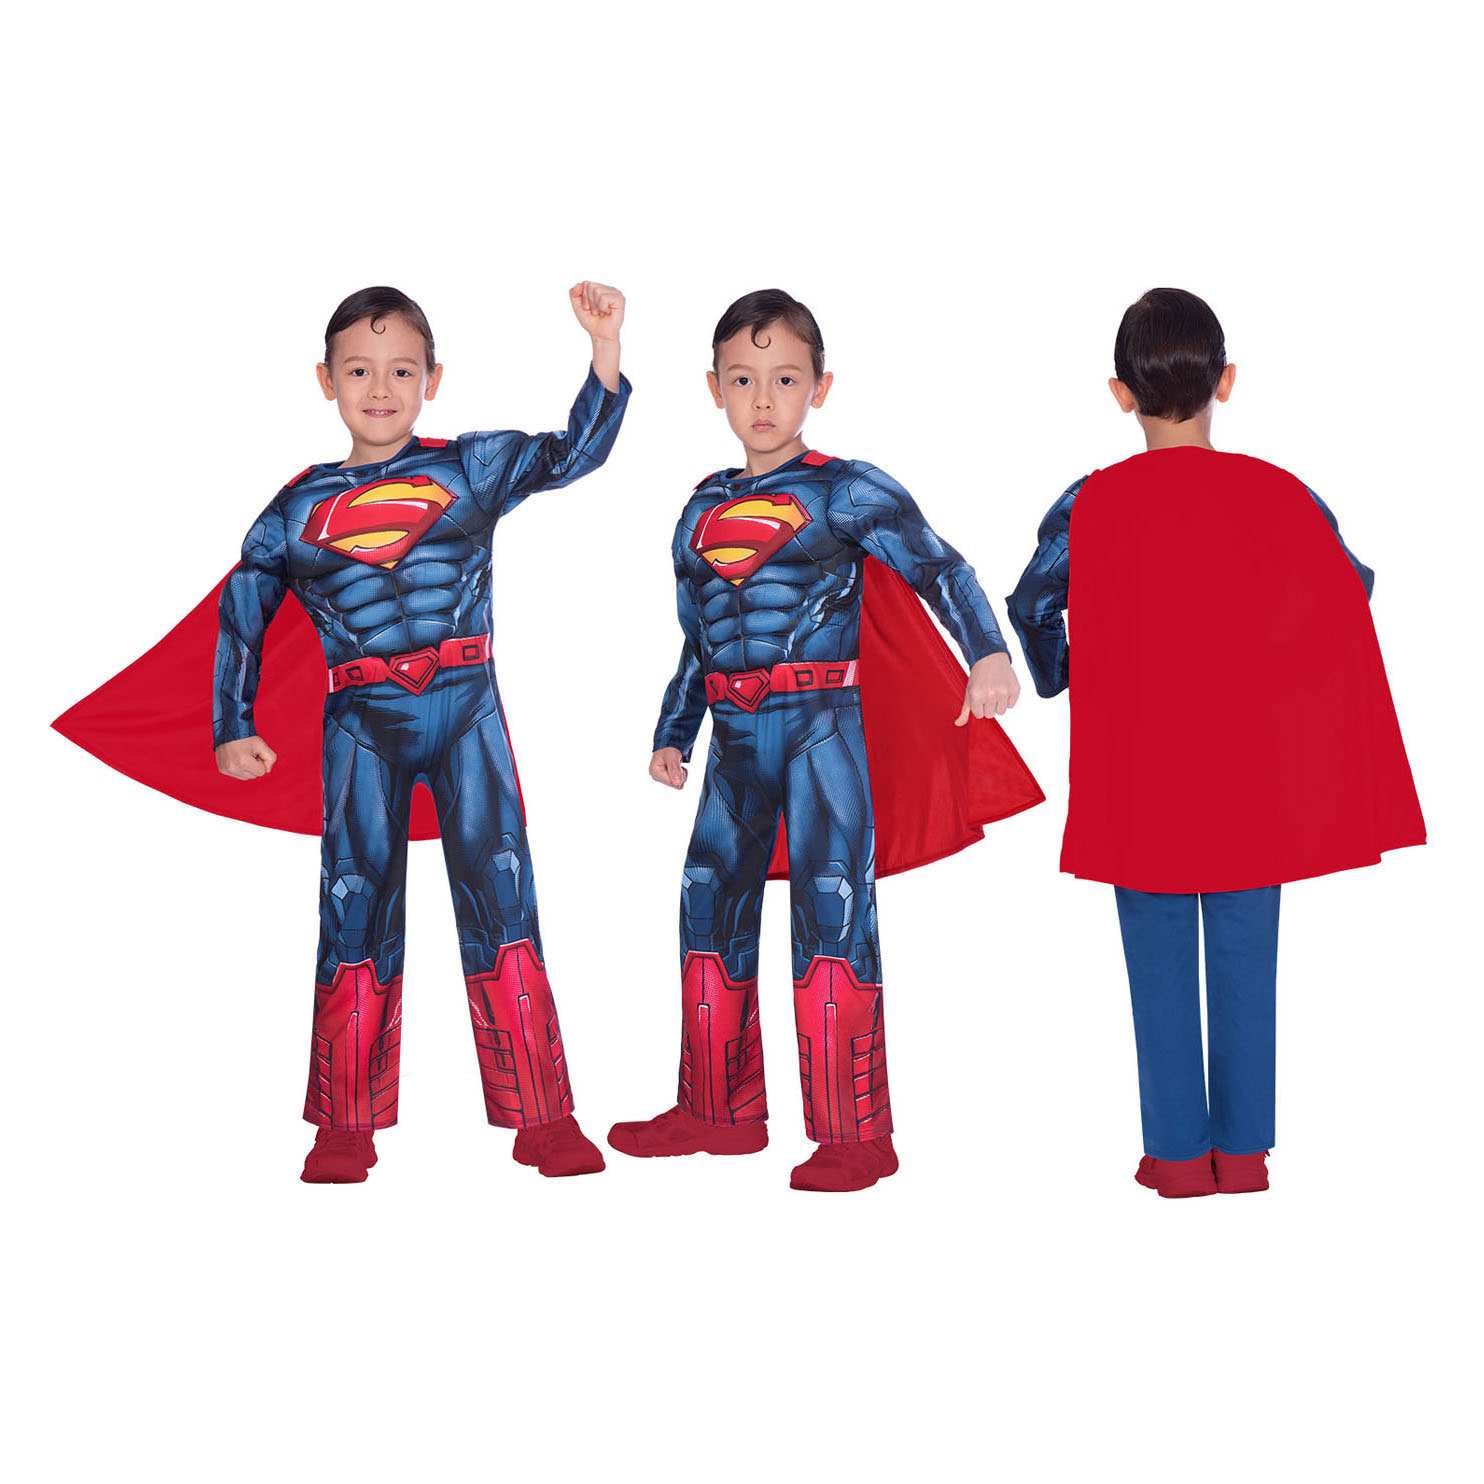 Kinderkostüm Superman Classic, 4-6 Jahre